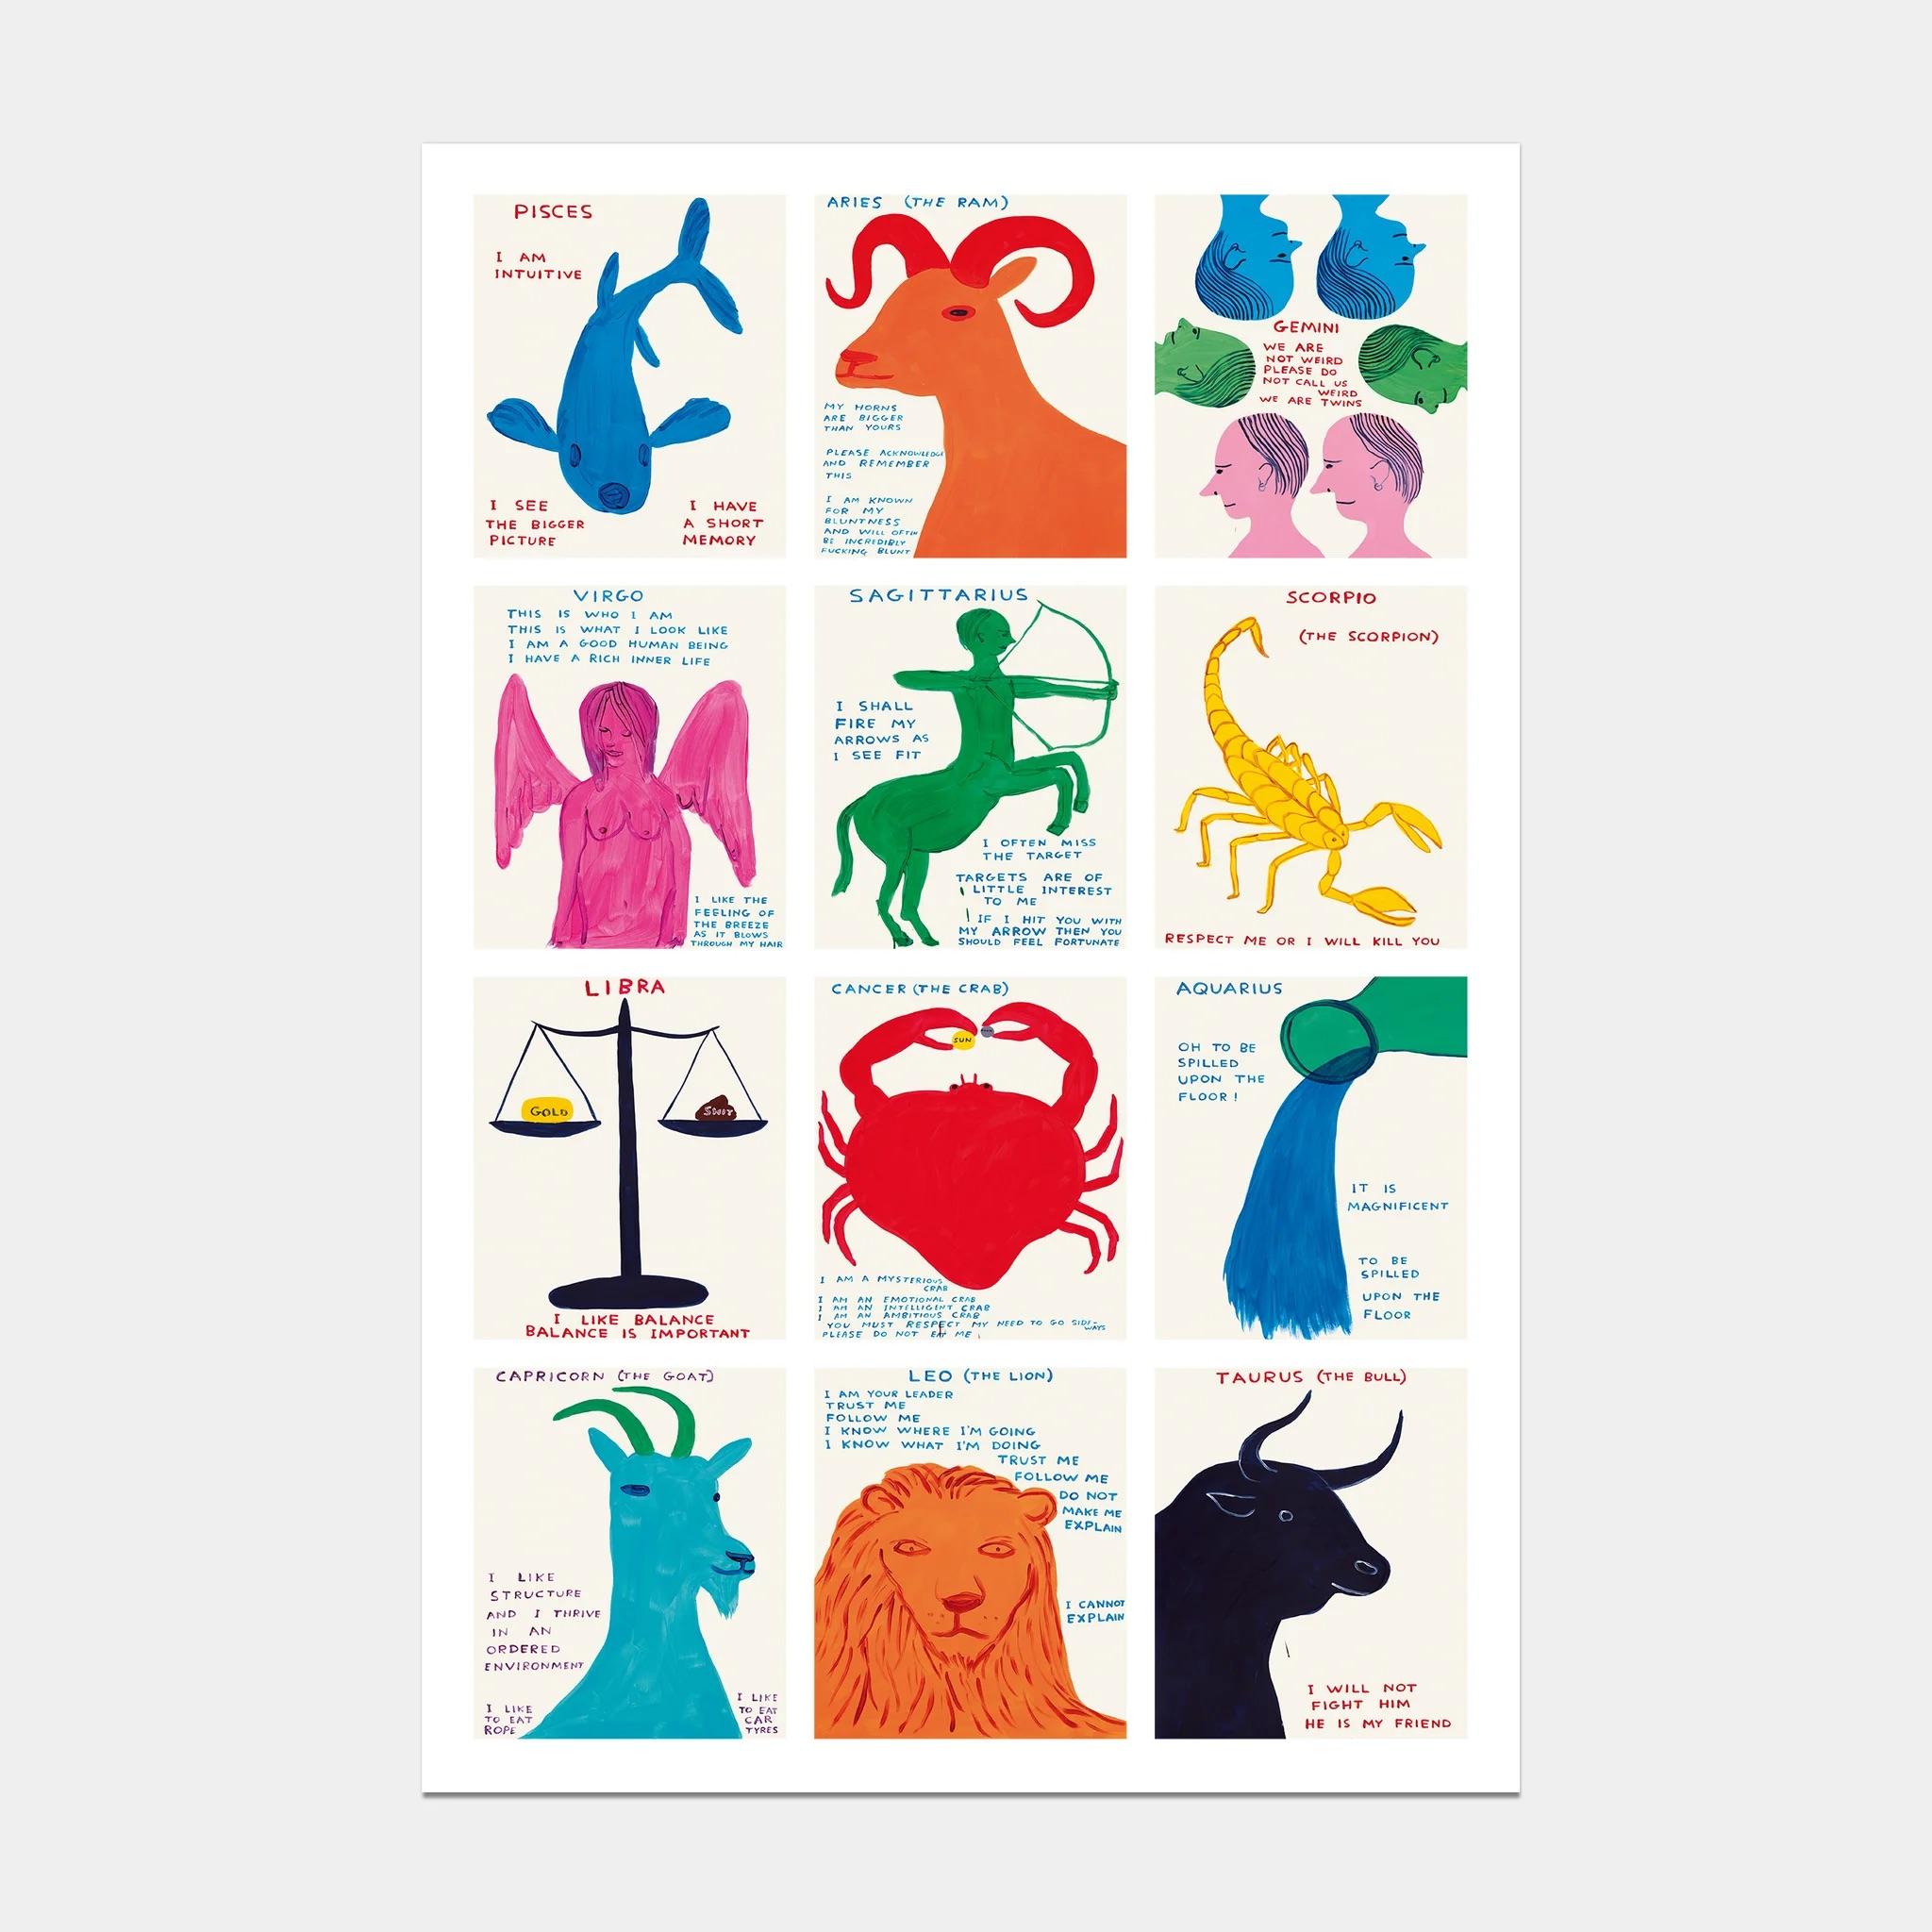 David Shrigley
Die Zeichen des Zodiacs
61 x 91,5 cm
Offset-Lithographie
Gedruckt auf 200g Arctic Volume
Narayana Press in Dänemark